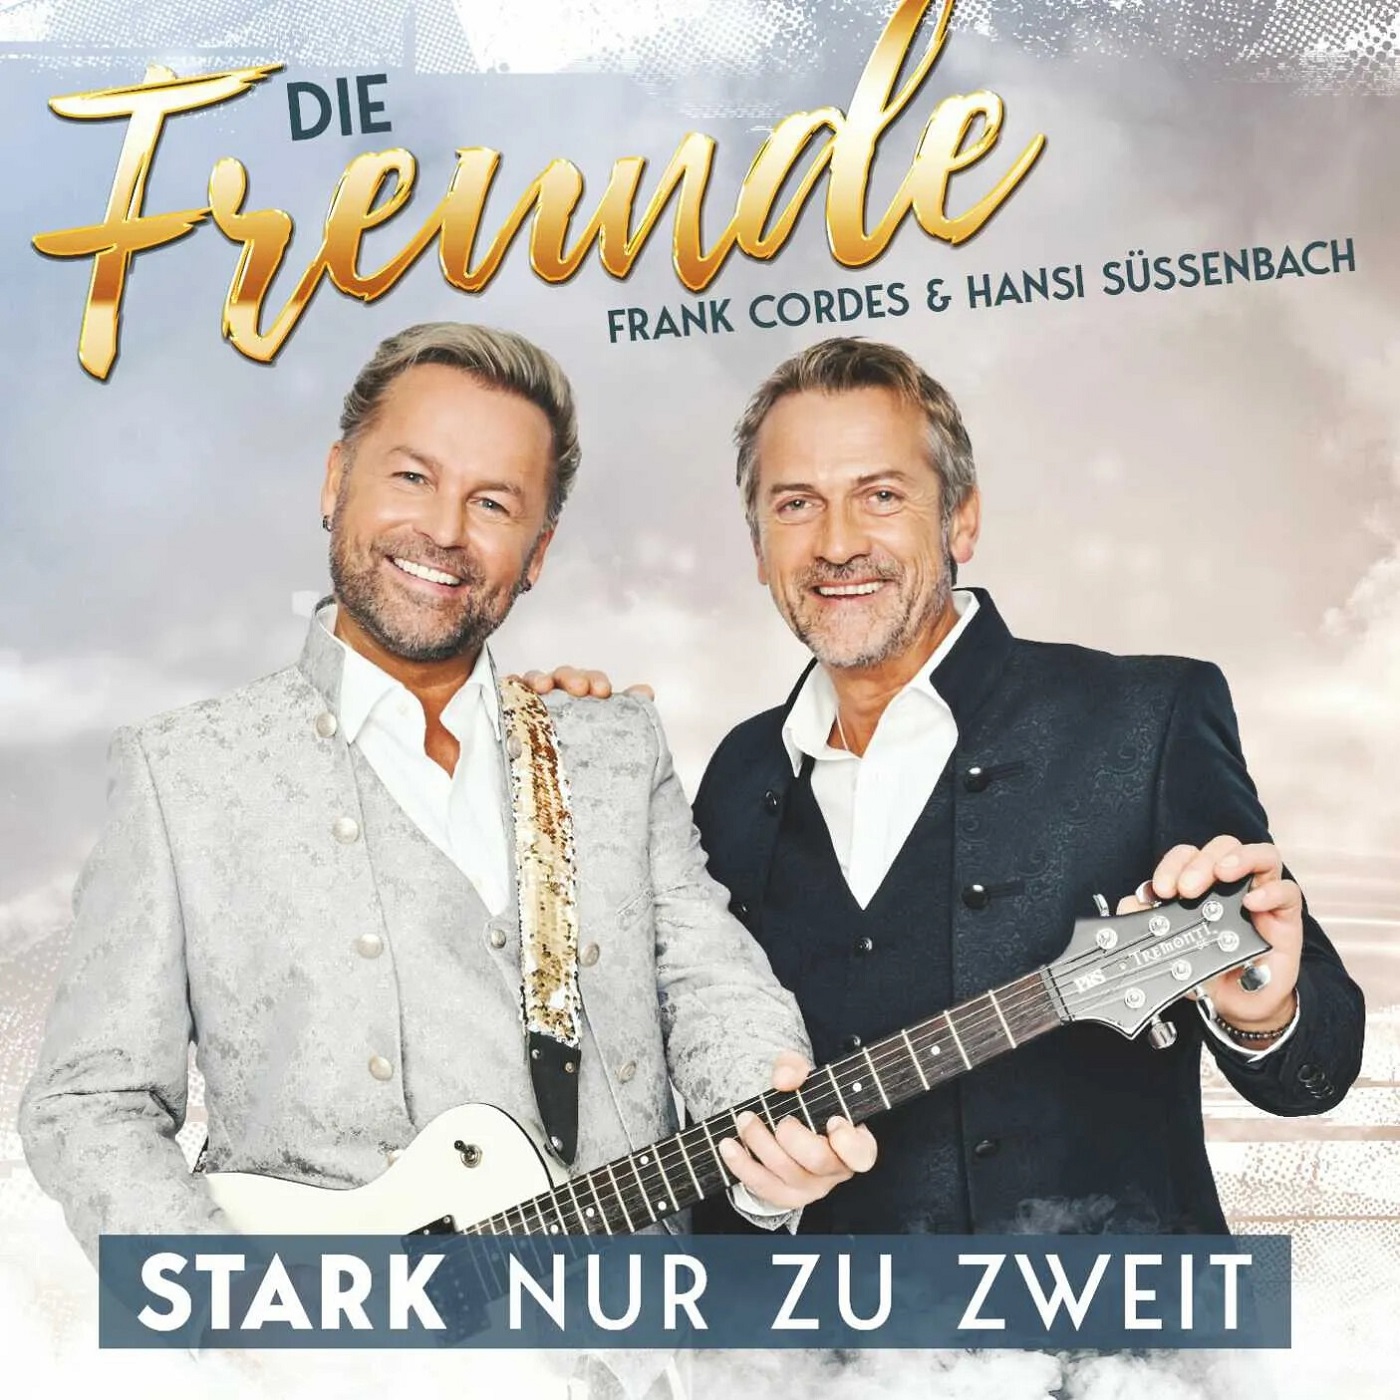 Die Freunde - Frank Cordes & Hansi Süssenbach - Stark nur zu zweit (2023) 